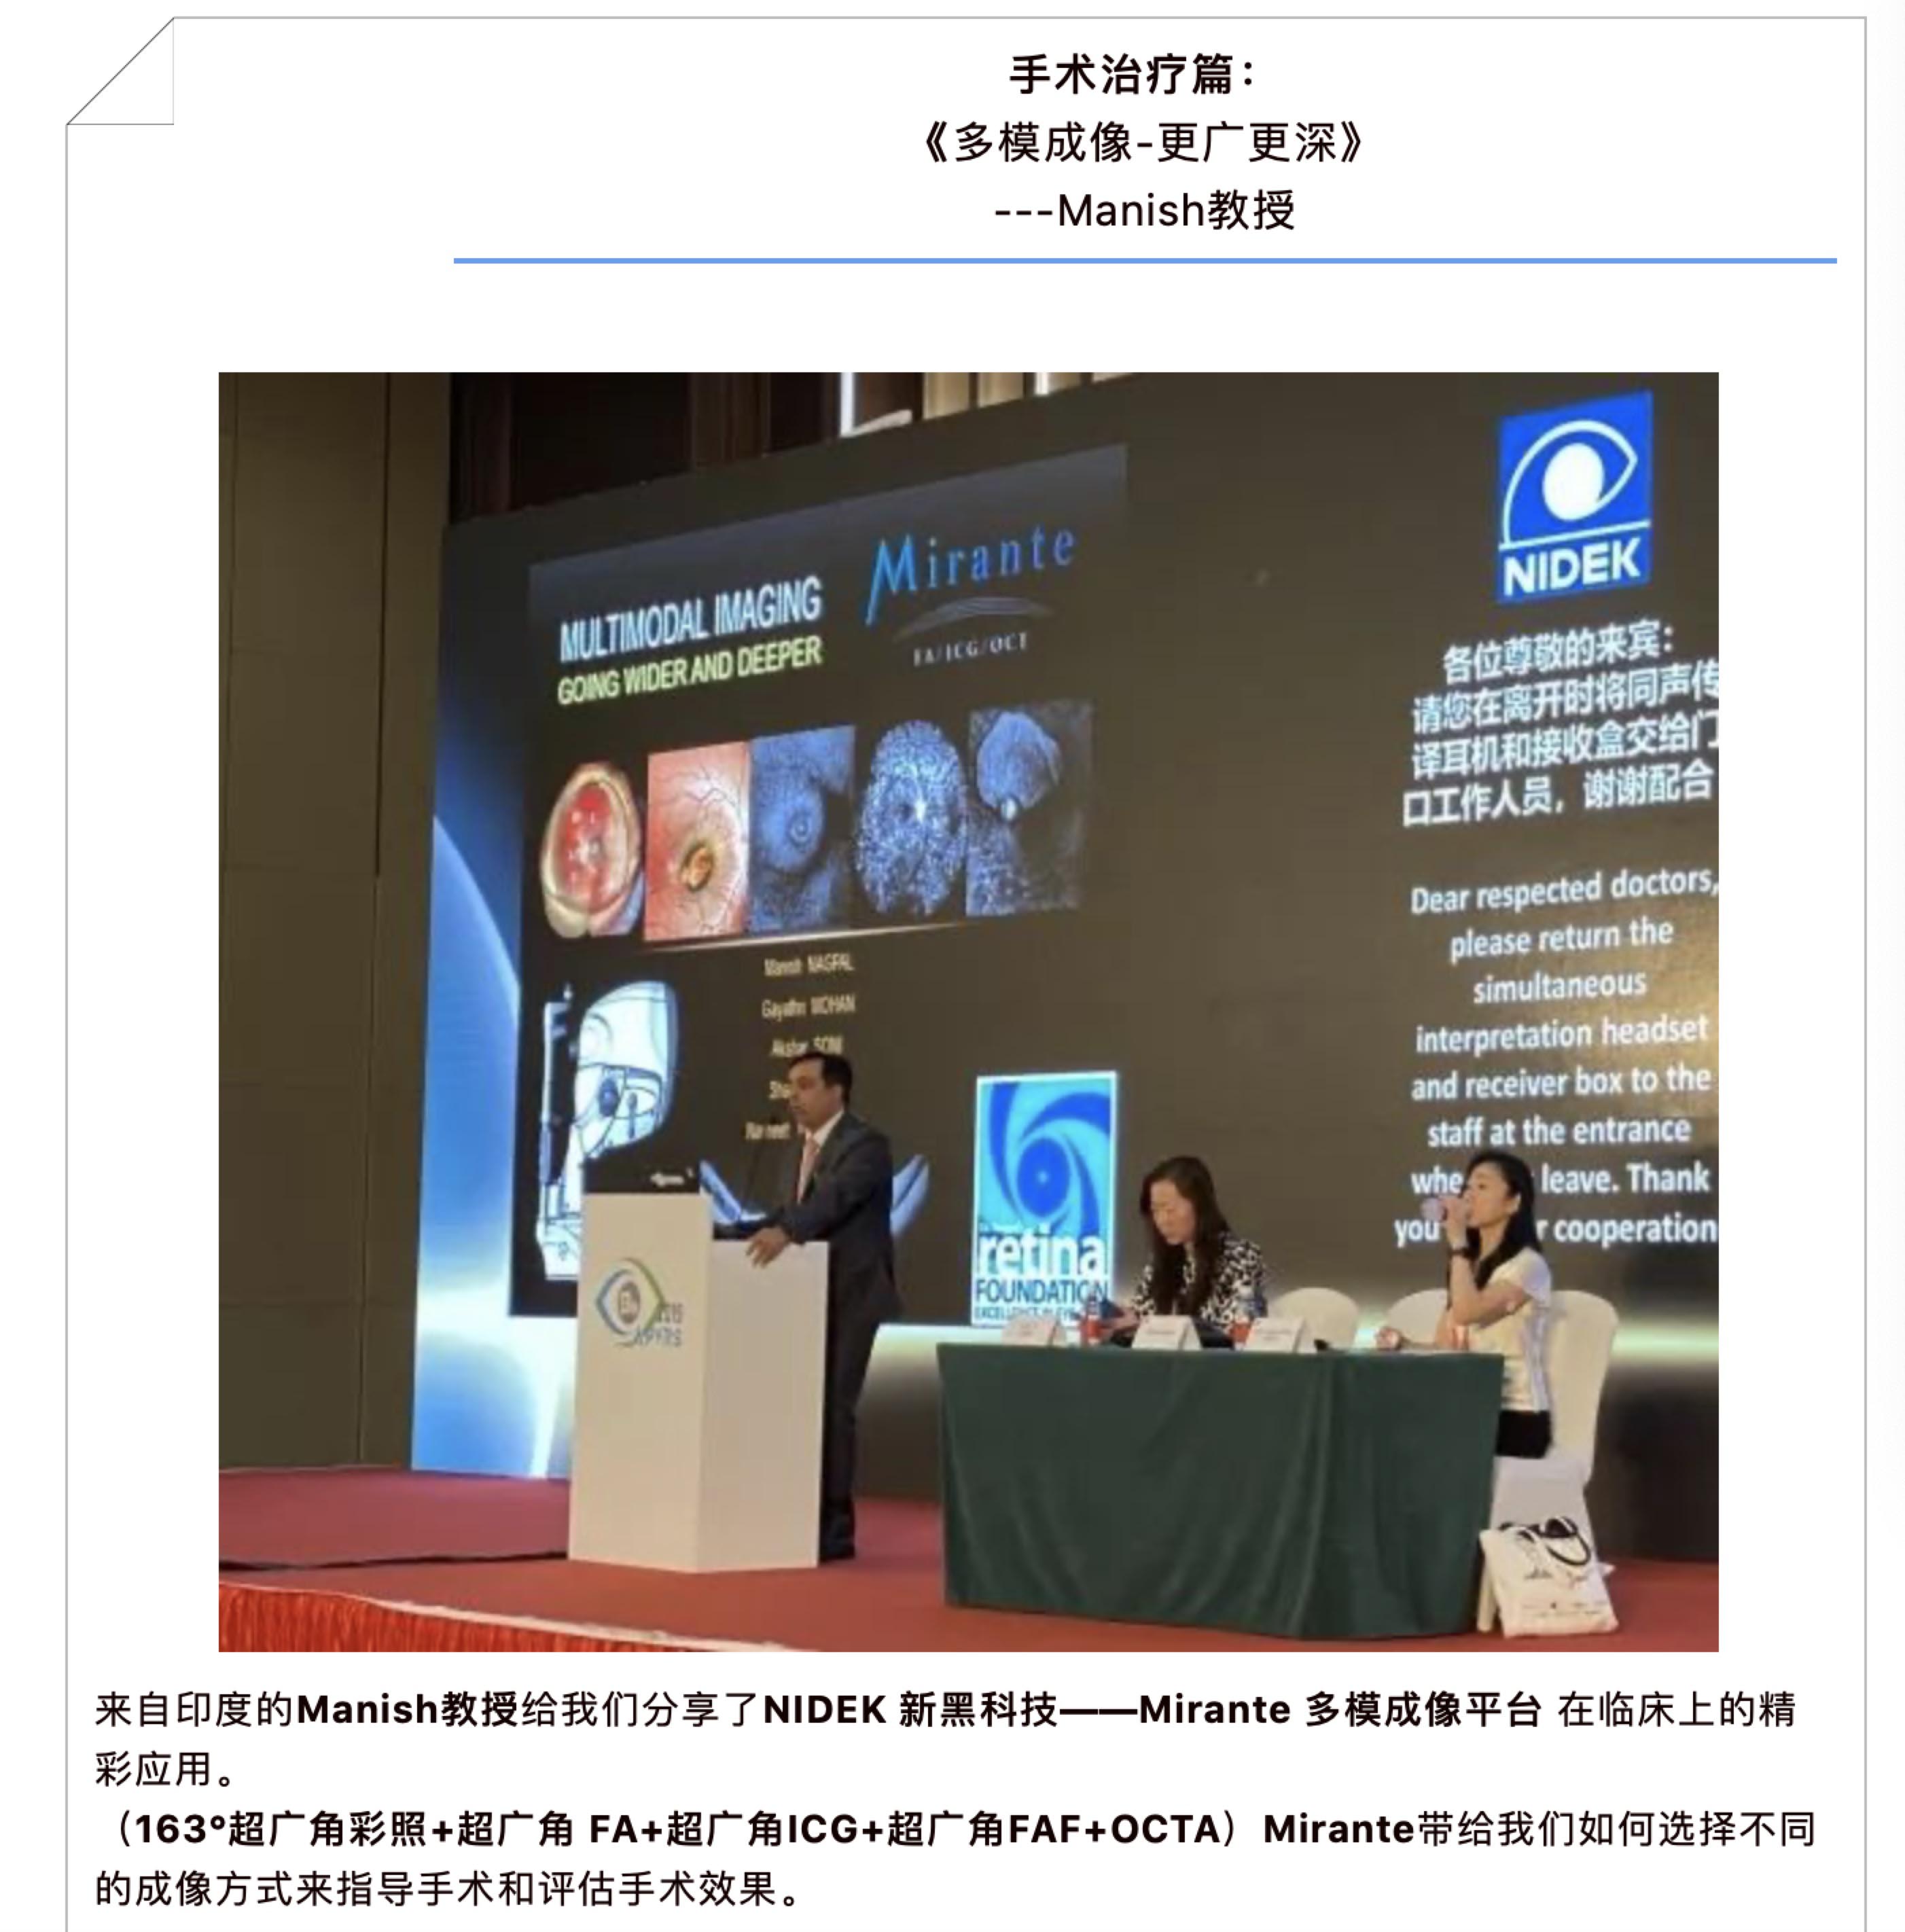 2019第13届亚太玻璃体视网膜学术大会（APVRS）暨2020中国眼底病论坛-圆满落幕